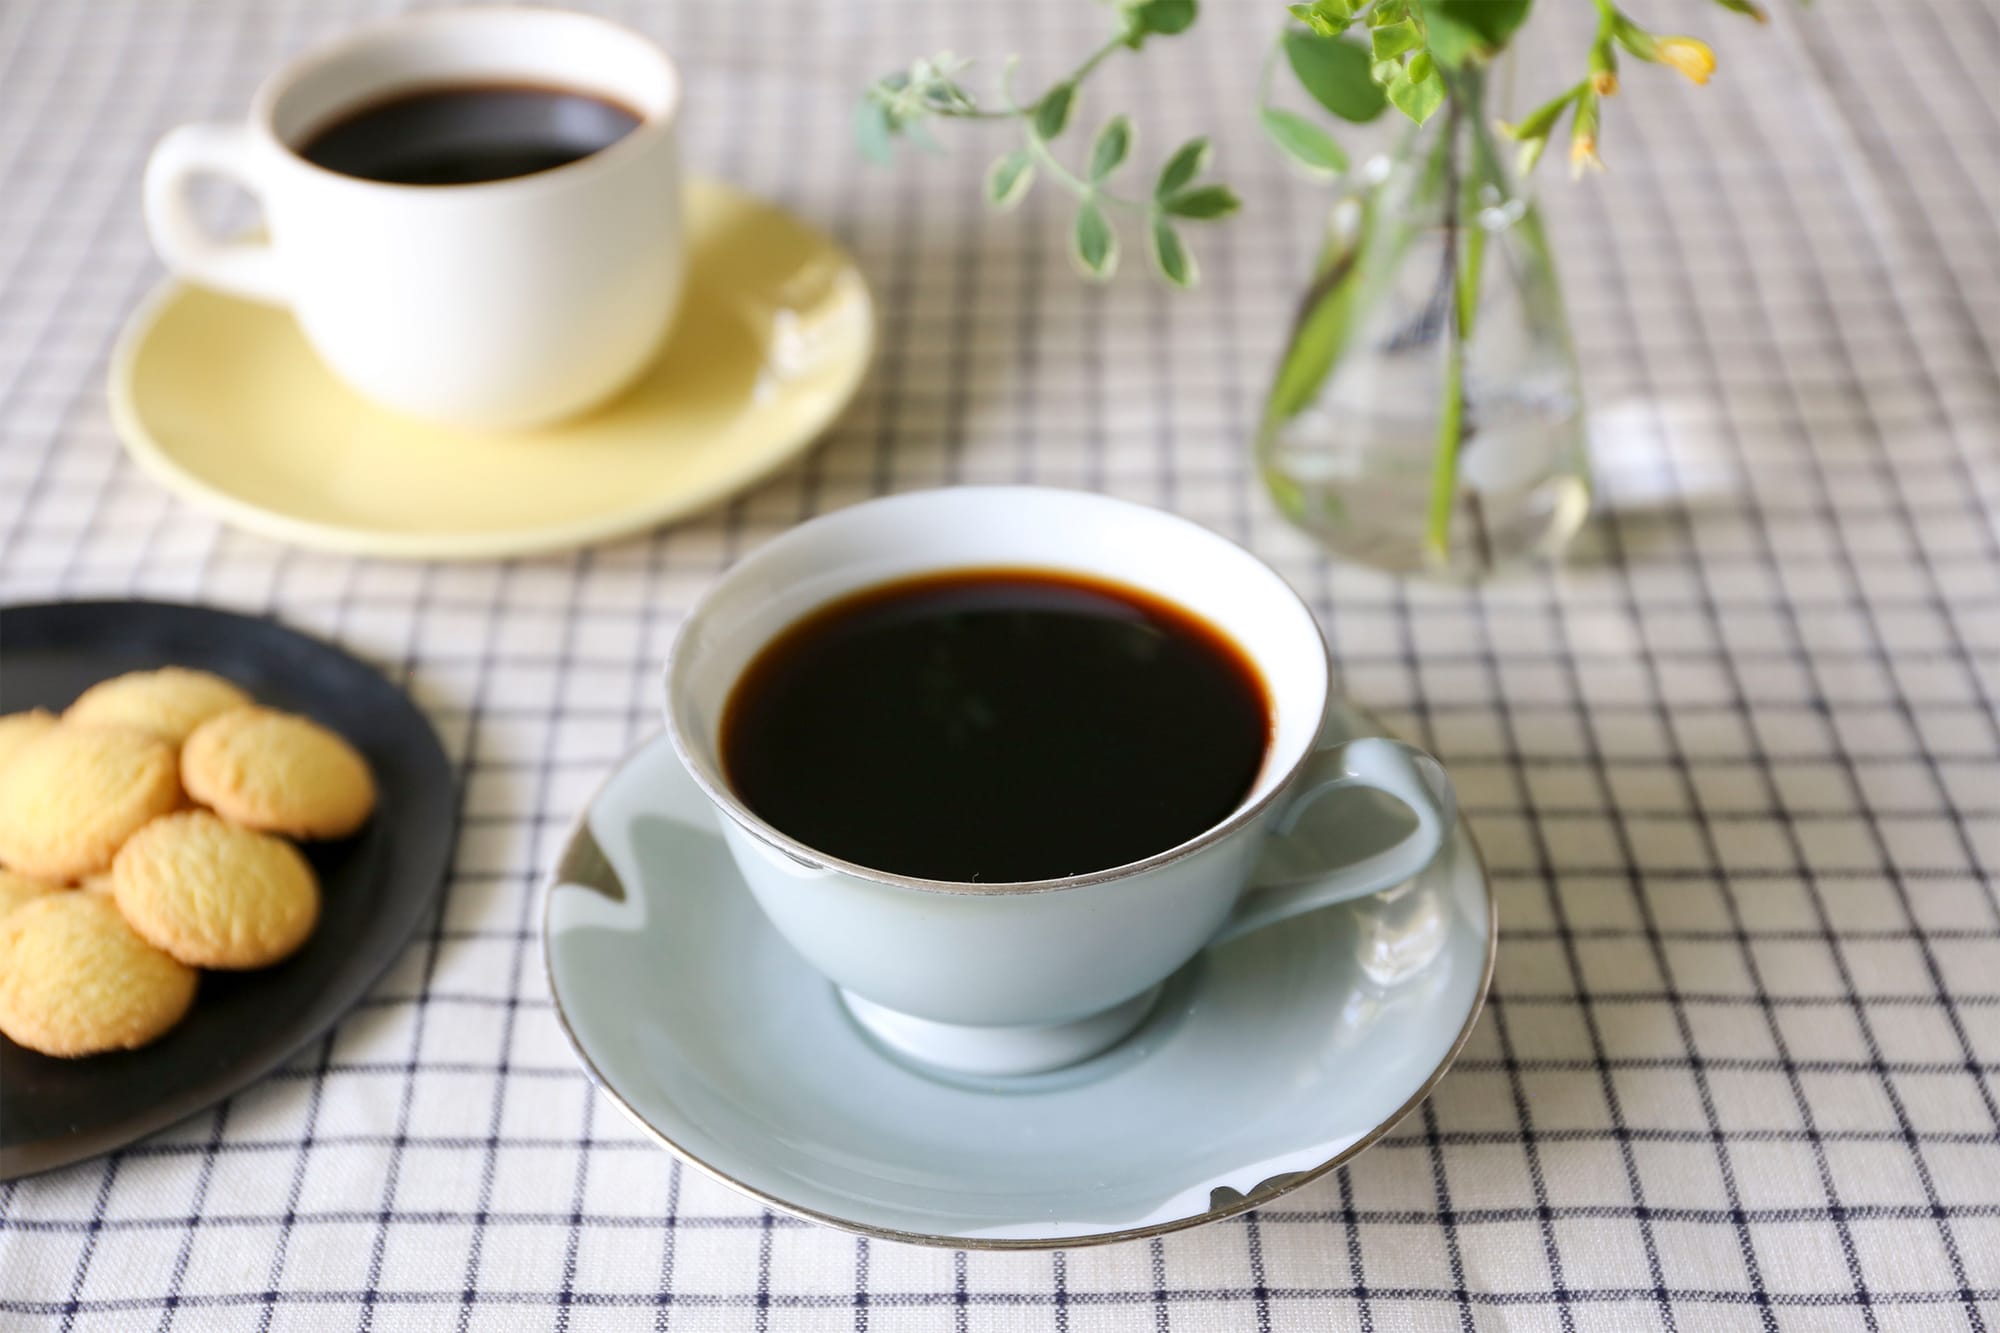 堀口珈琲のネットショップ「Coffee at HOME」。本格コーヒーを自宅で楽しむためのセットや器具を提案する。